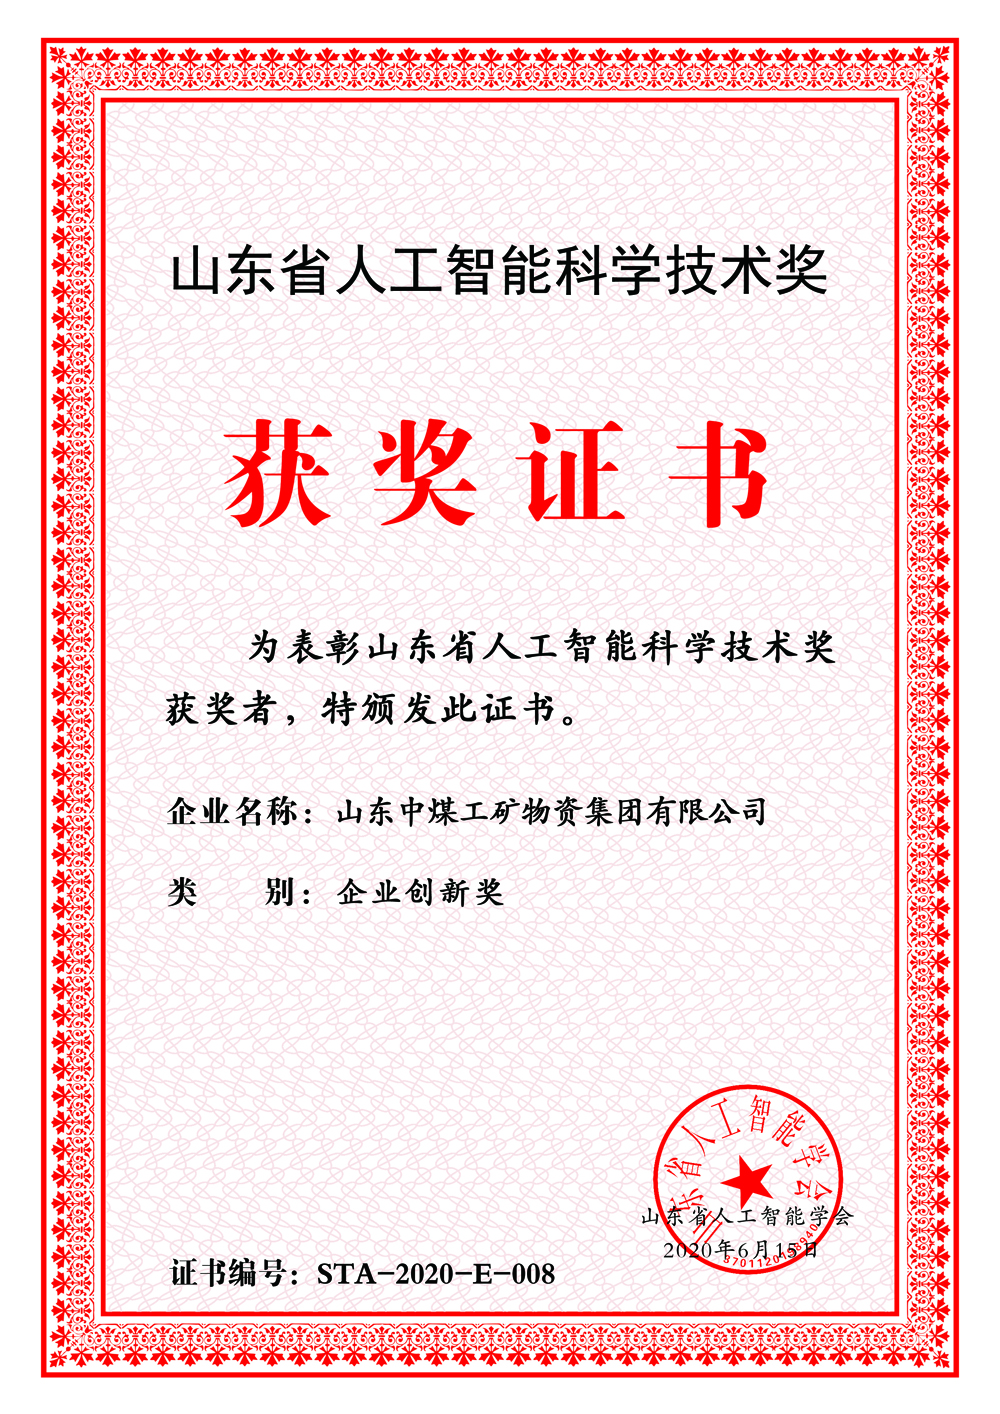 Сердечно поздравляем China Coal Group с победой в номинации «Шаньдунский искусственный интеллект».